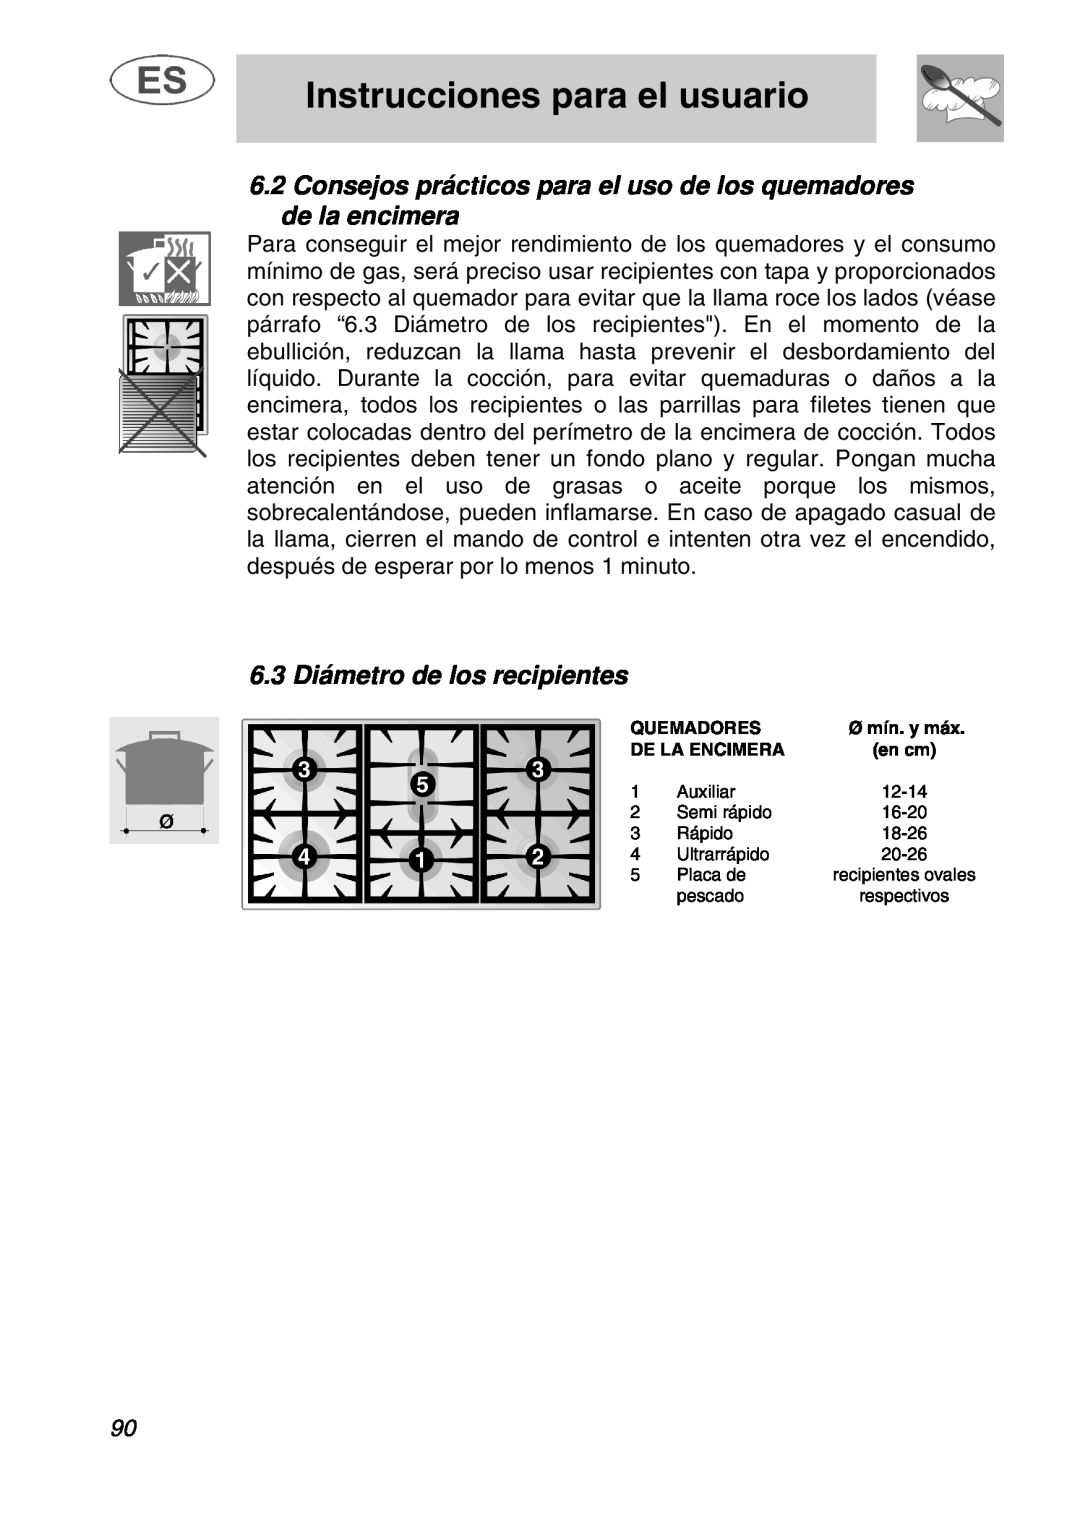 Smeg A1.1K 6.3 Diámetro de los recipientes, Instrucciones para el usuario, Quemadores, De La Encimera, en cm 